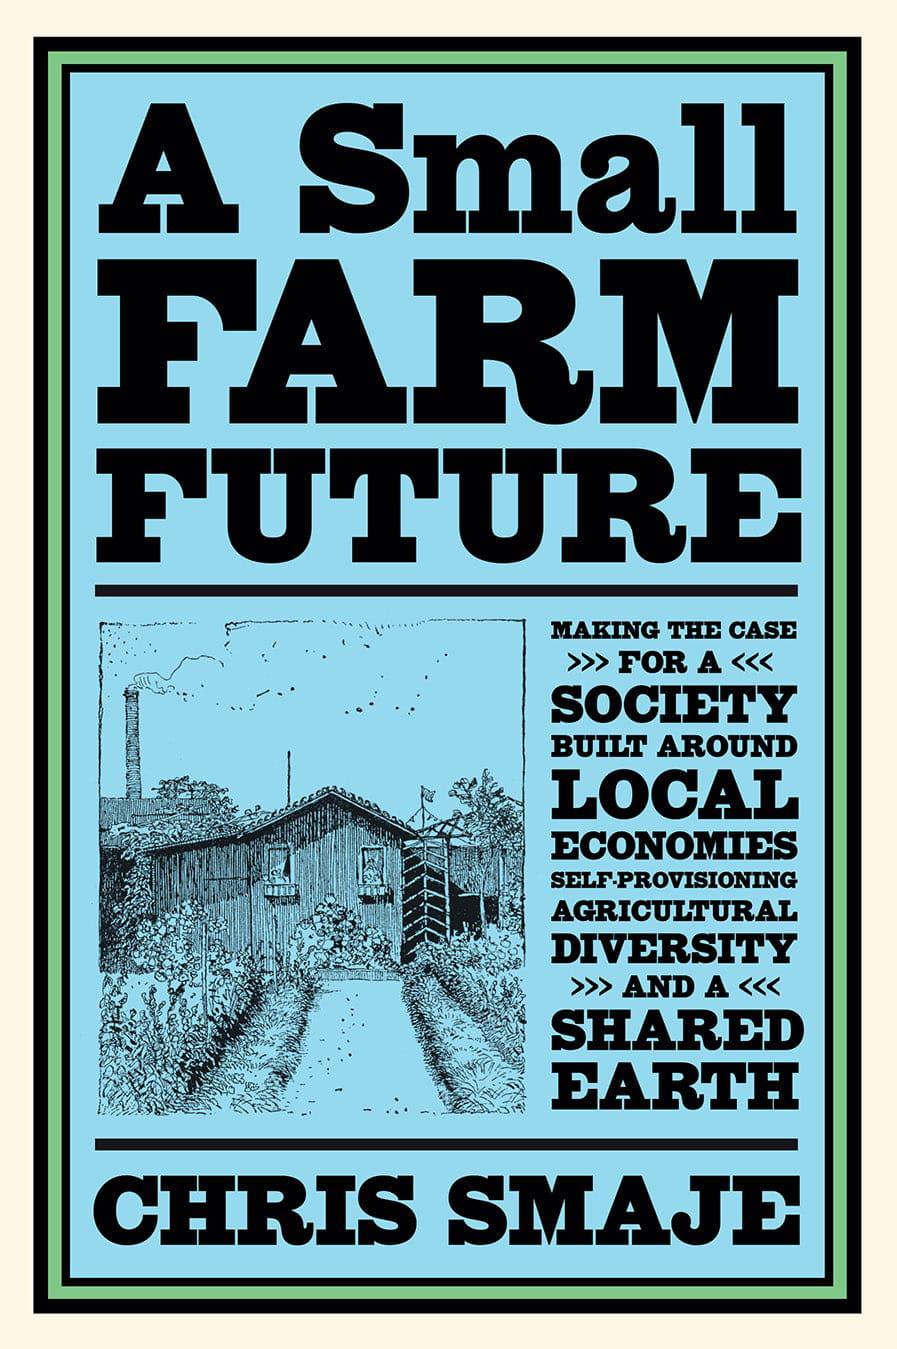 A Small Farm Future by Chris Smaje - The Josephine Porter Institute